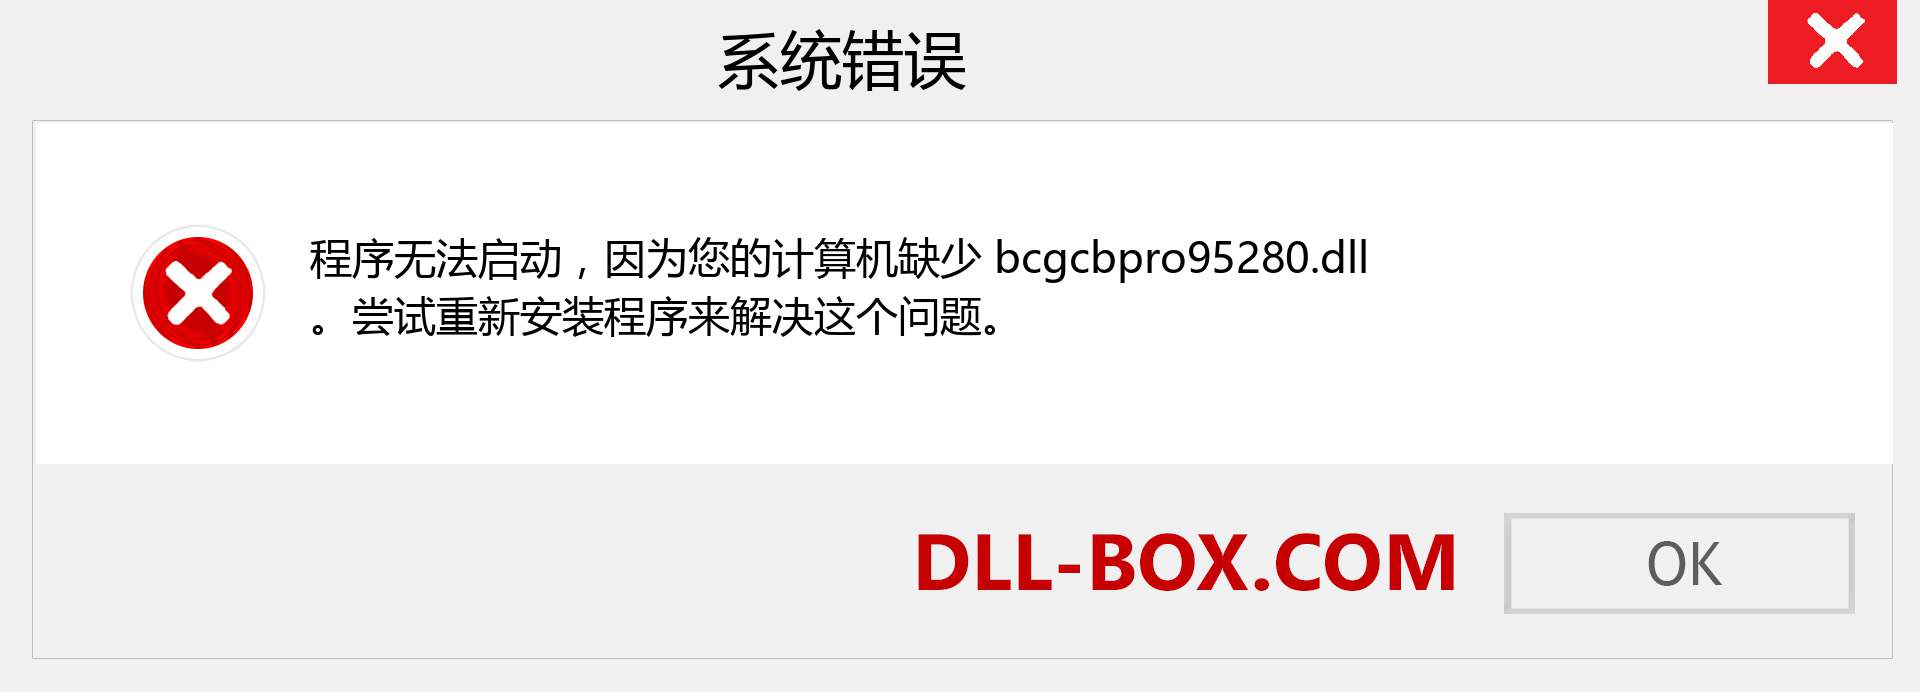 bcgcbpro95280.dll 文件丢失？。 适用于 Windows 7、8、10 的下载 - 修复 Windows、照片、图像上的 bcgcbpro95280 dll 丢失错误